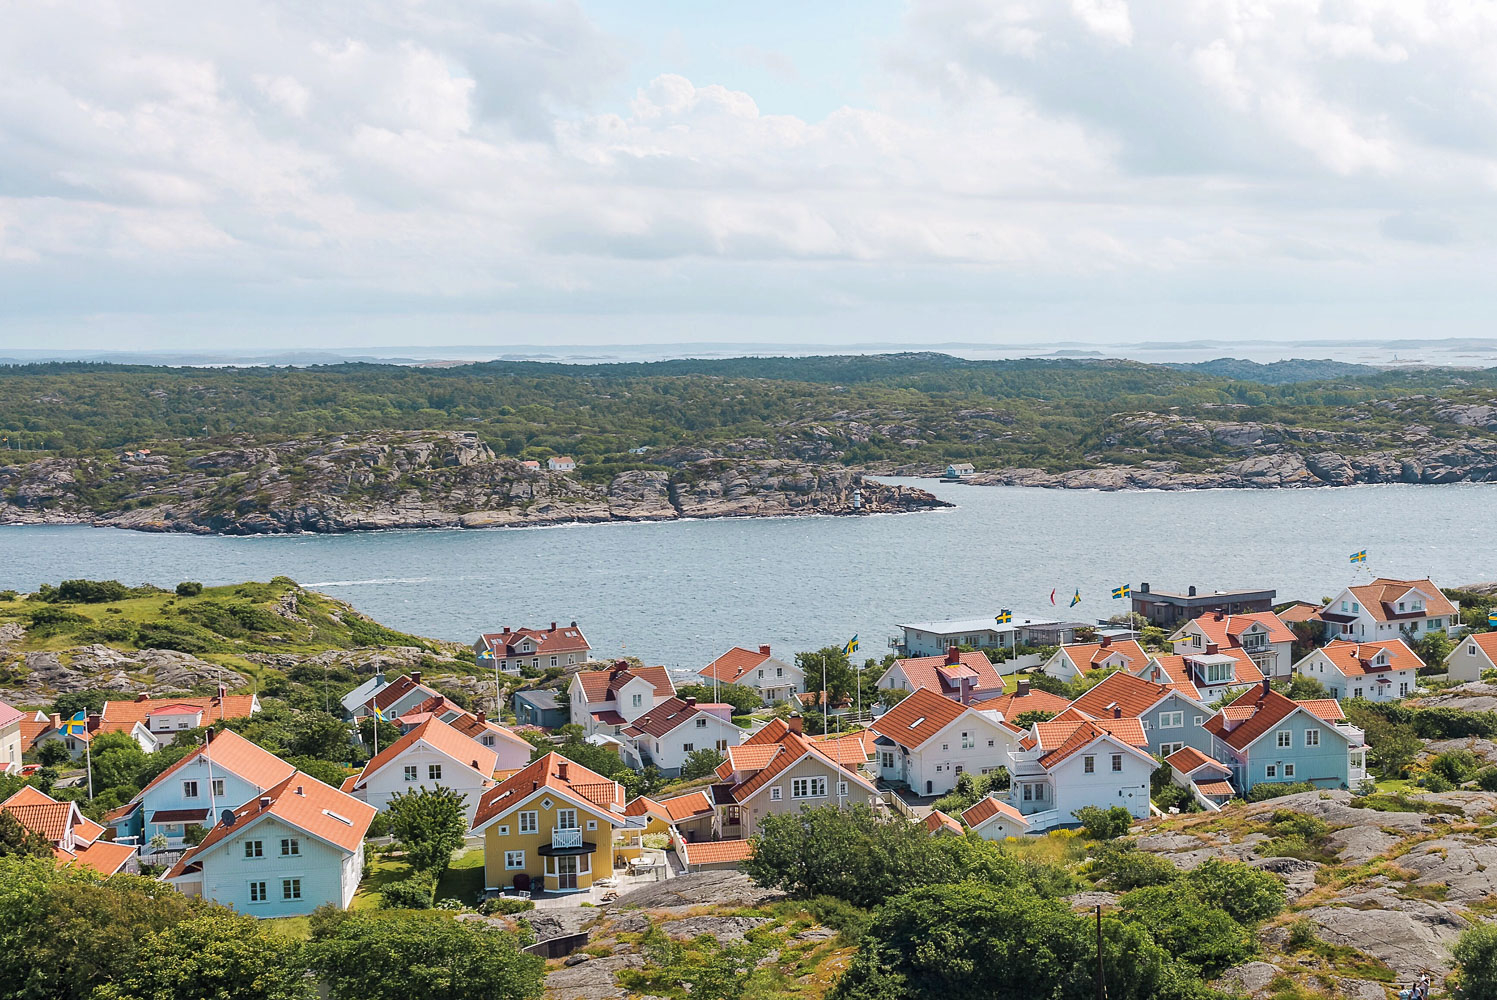 Picturesque Marstrand island